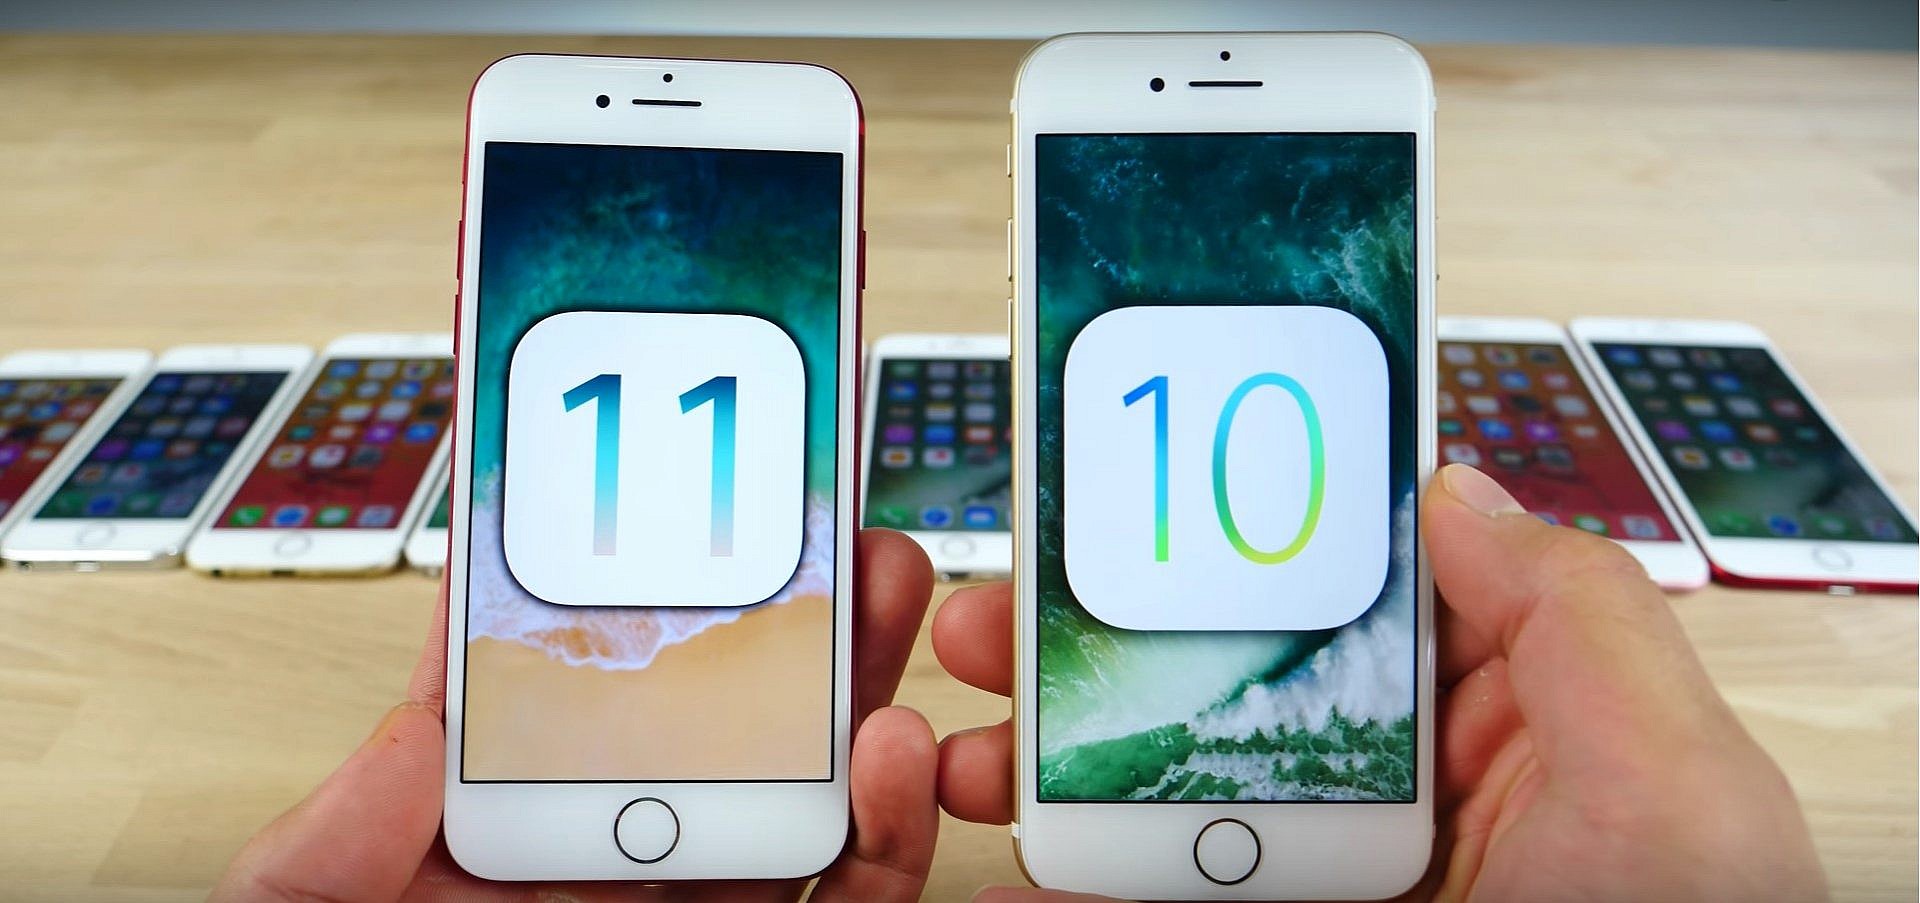 ไม่ต้องรีบ! มาดูคลิปเปรียบเทียบความเร็วระหว่าง iOS 10.3.3 และ iOS 11 กัน!